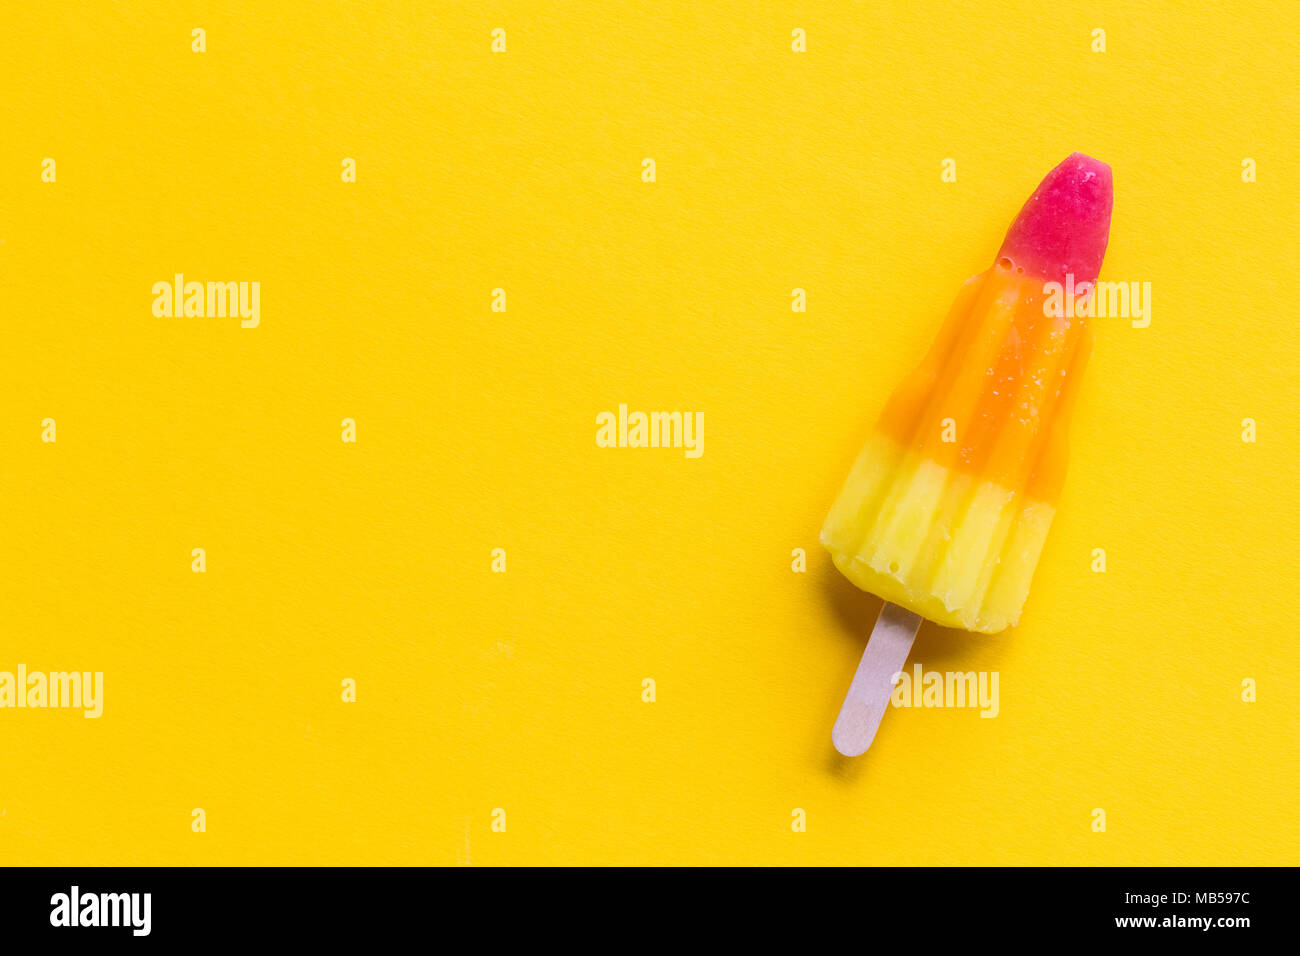 Rocket geformte Sommer Eis am Stiel auf einem hellen gelben Hintergrund Stockfoto